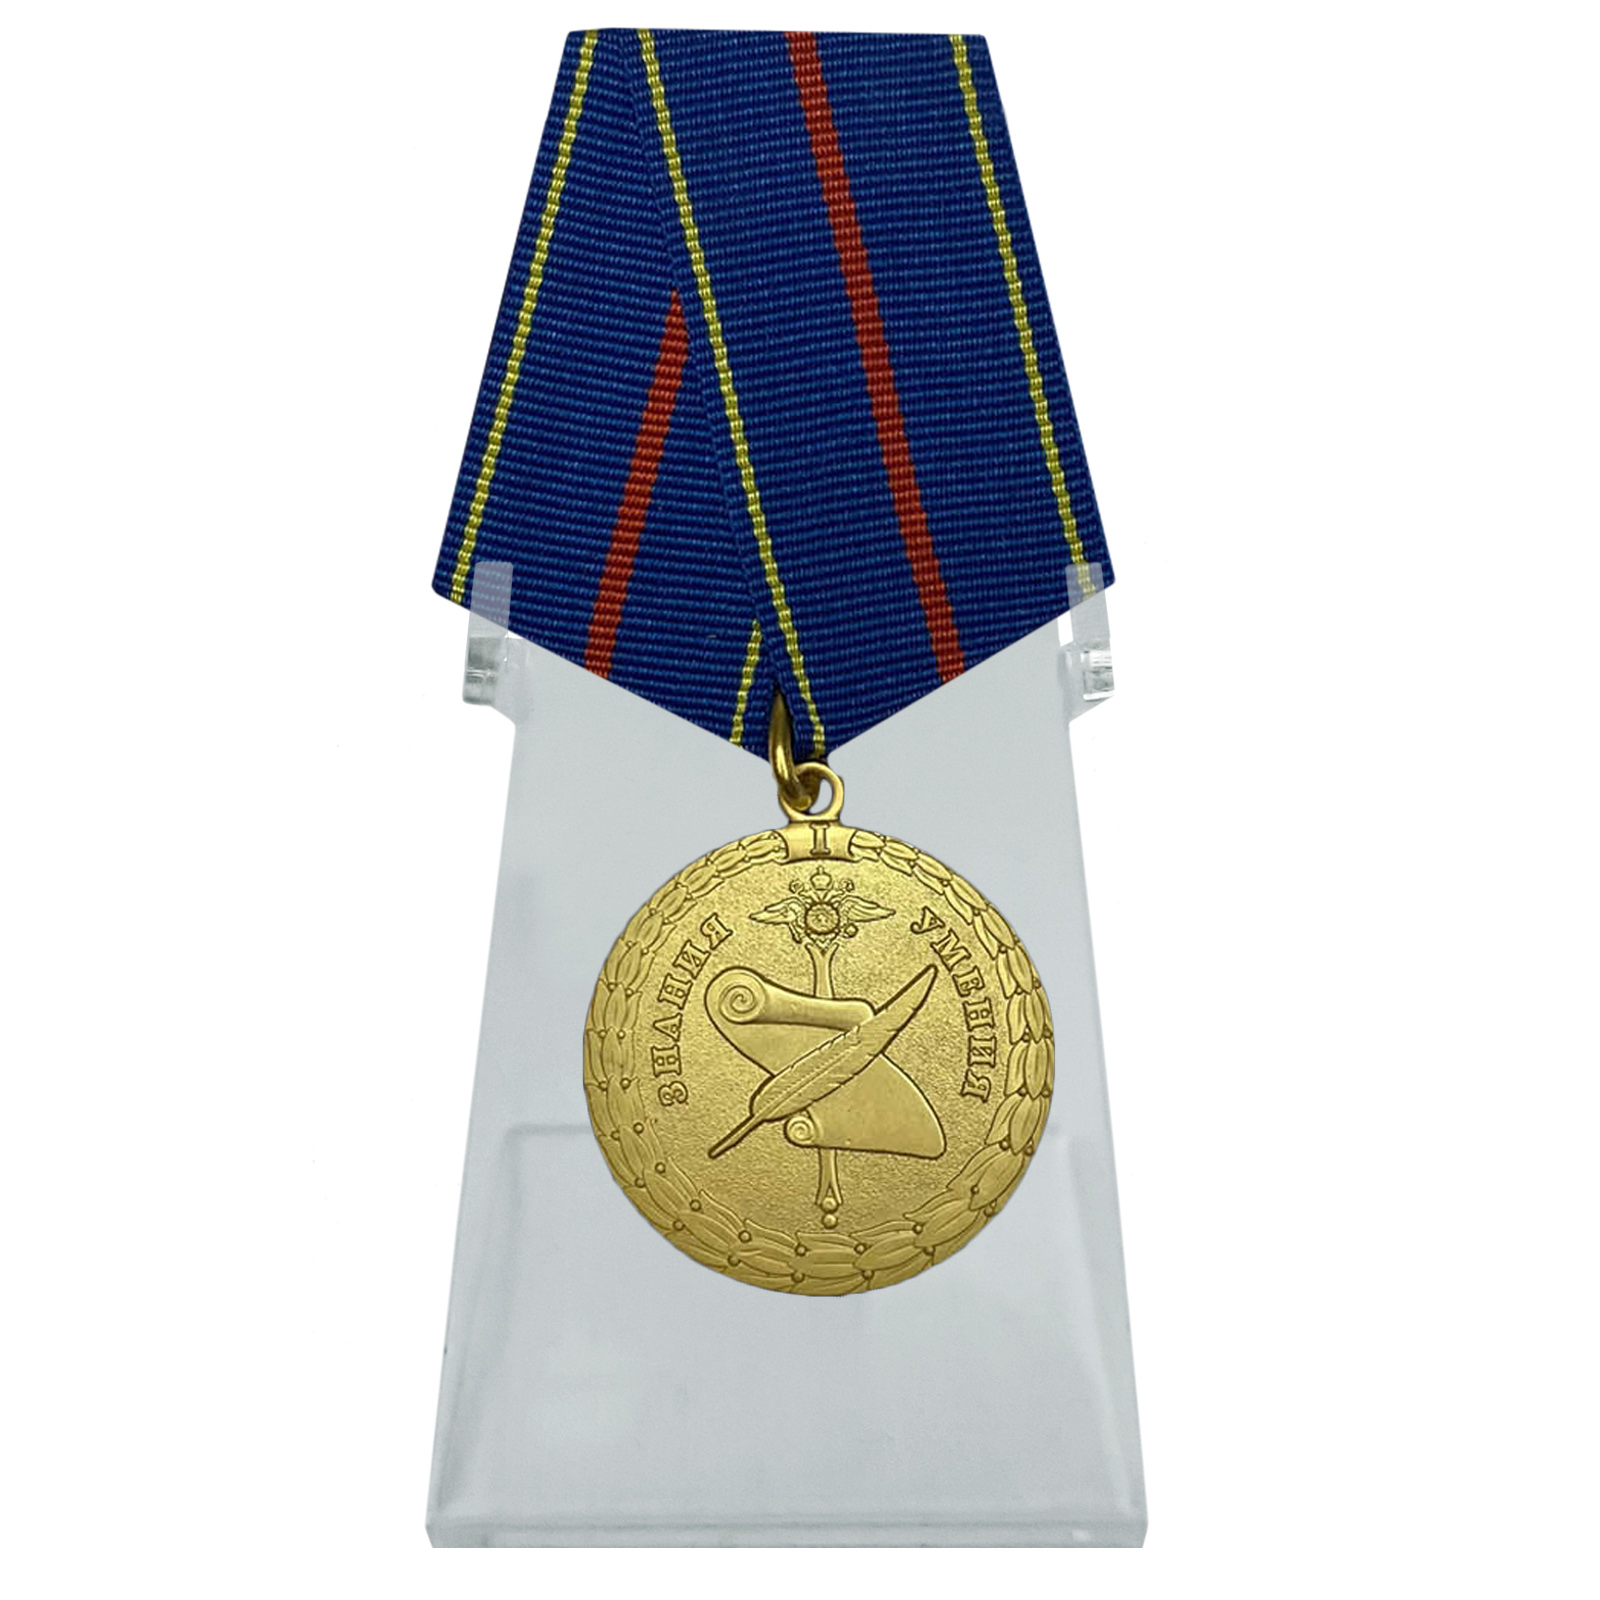 Купить медаль За заслуги в управленческой деятельности МВД РФ 1 степени на подставке онлайн